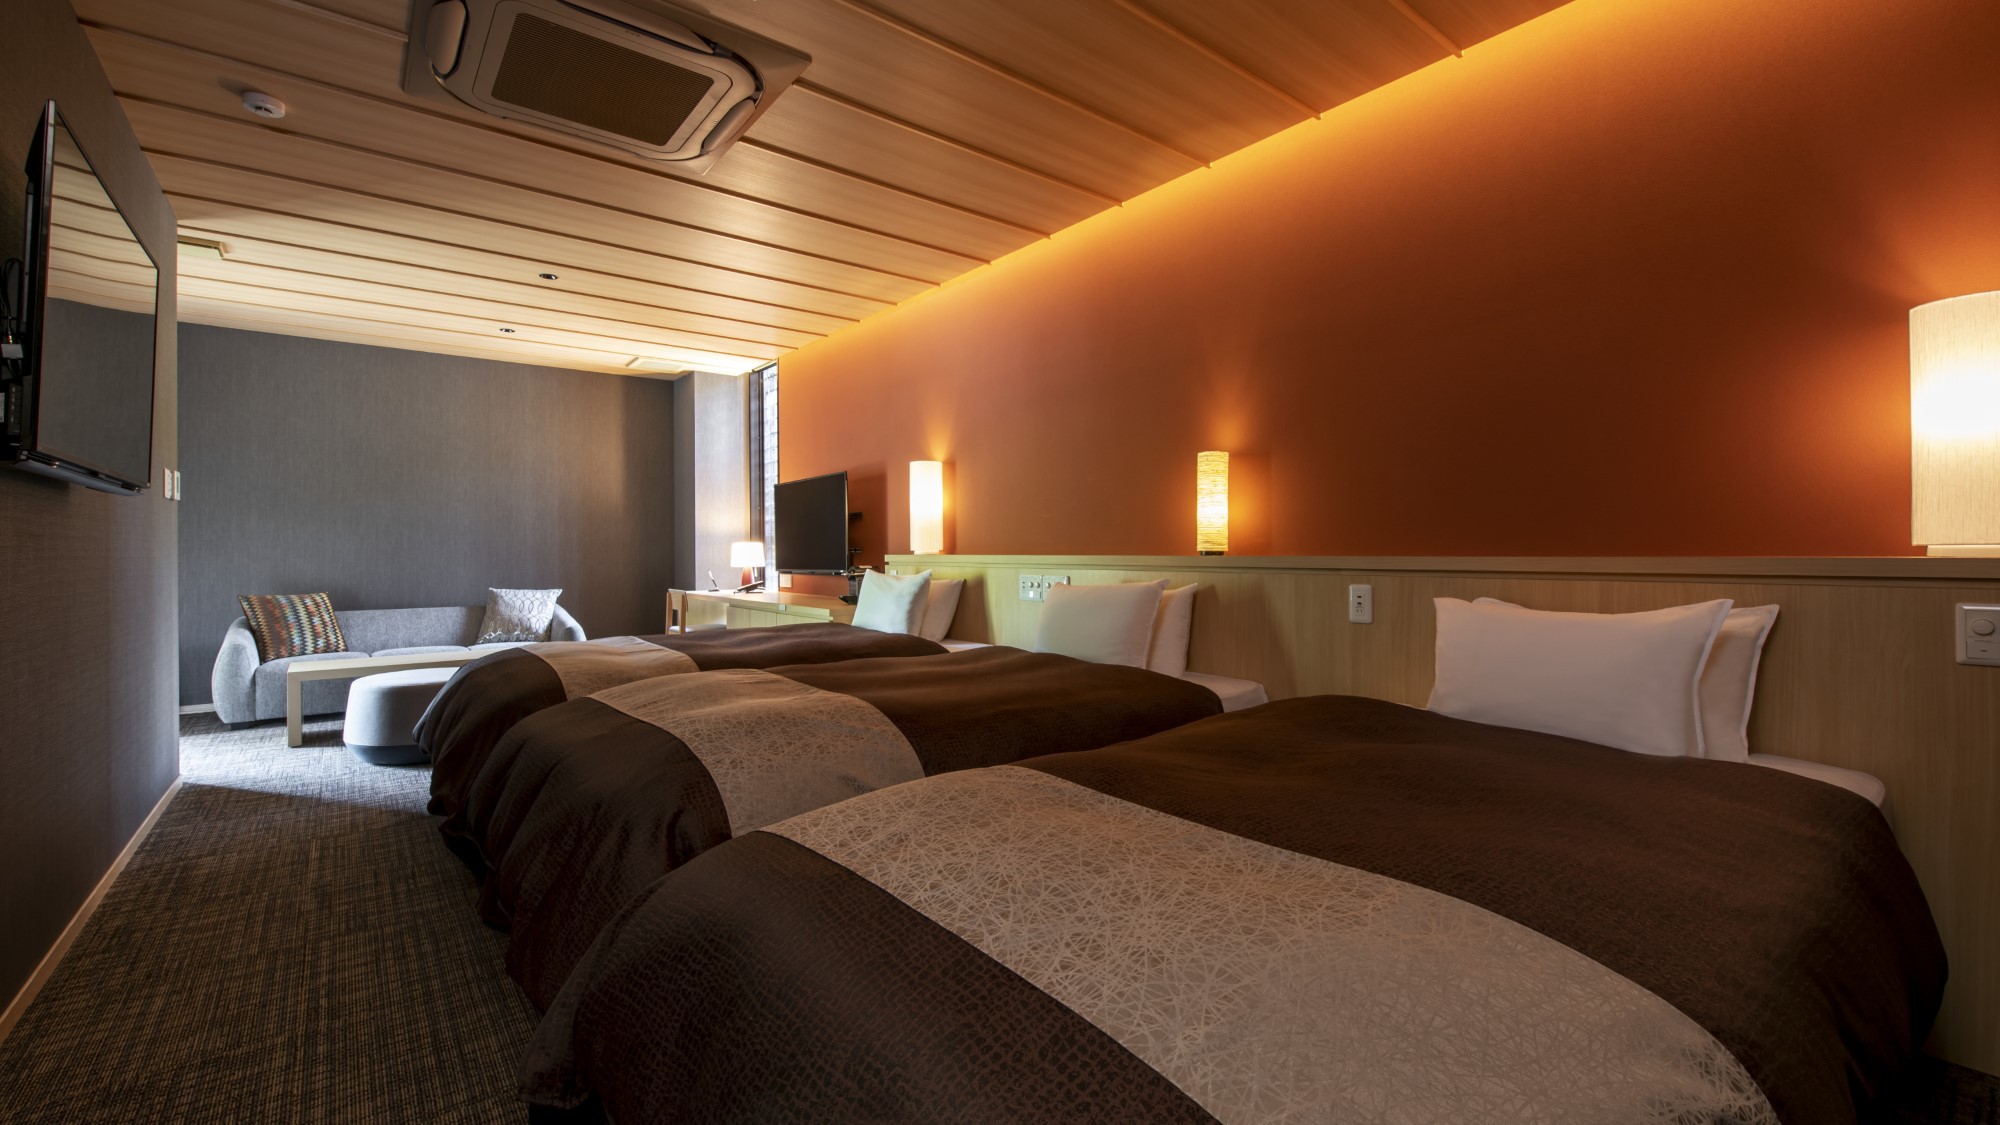 洋モダン〜Executive Type〜ウッドを基調とした客室は、和モダンな落ち着いた雰囲気。